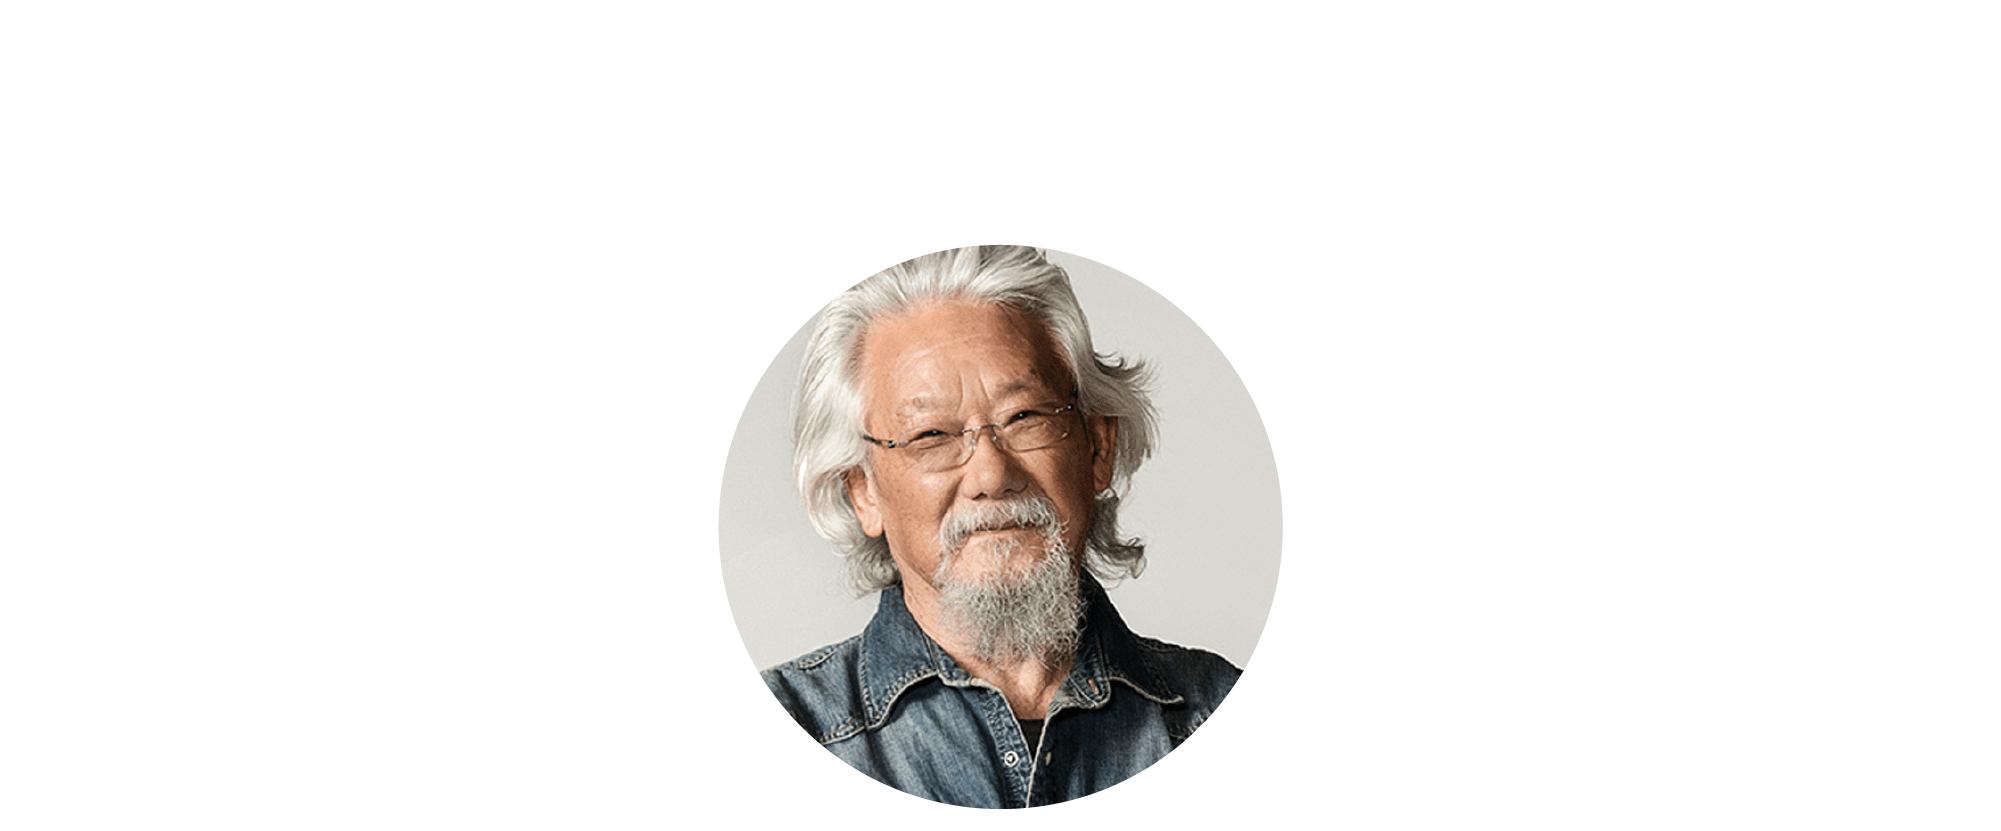 The David Suzuki Podcast